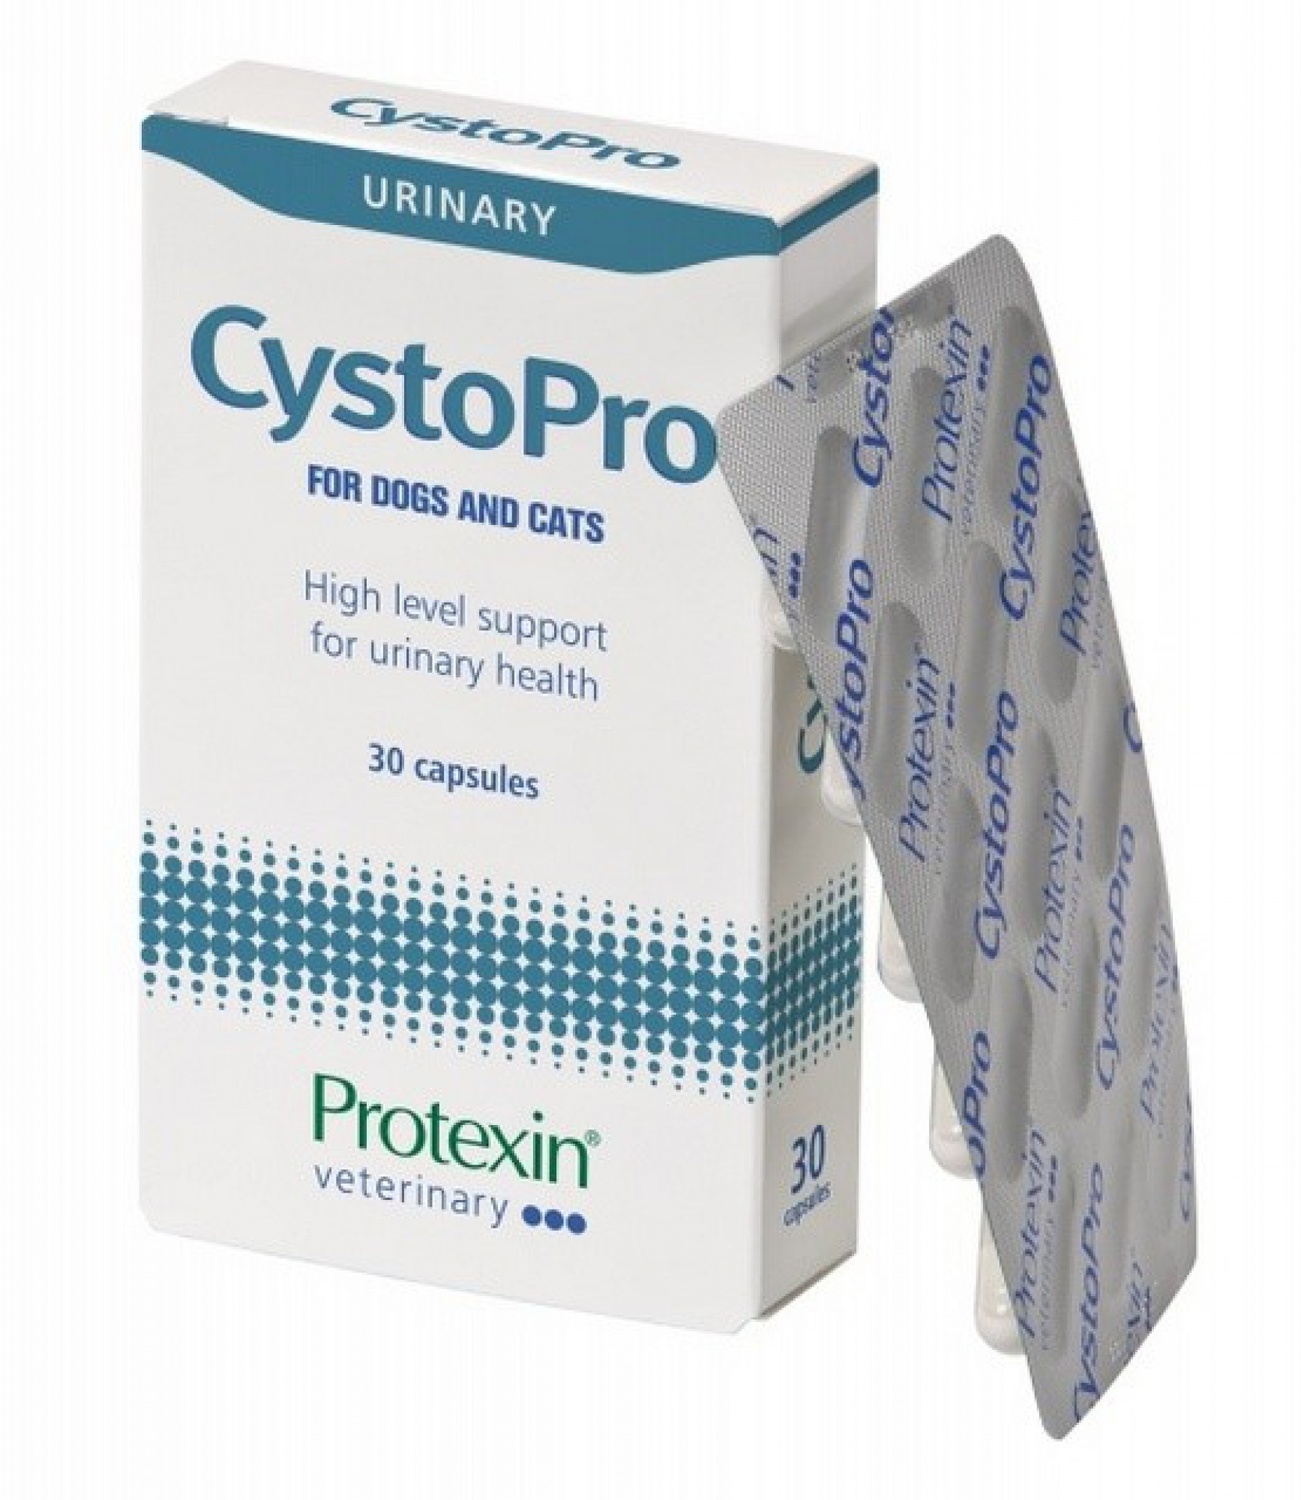 Protexin Cystopro supliment alimentar pentru susținerea tractului urinar la câini și pisici - zoom